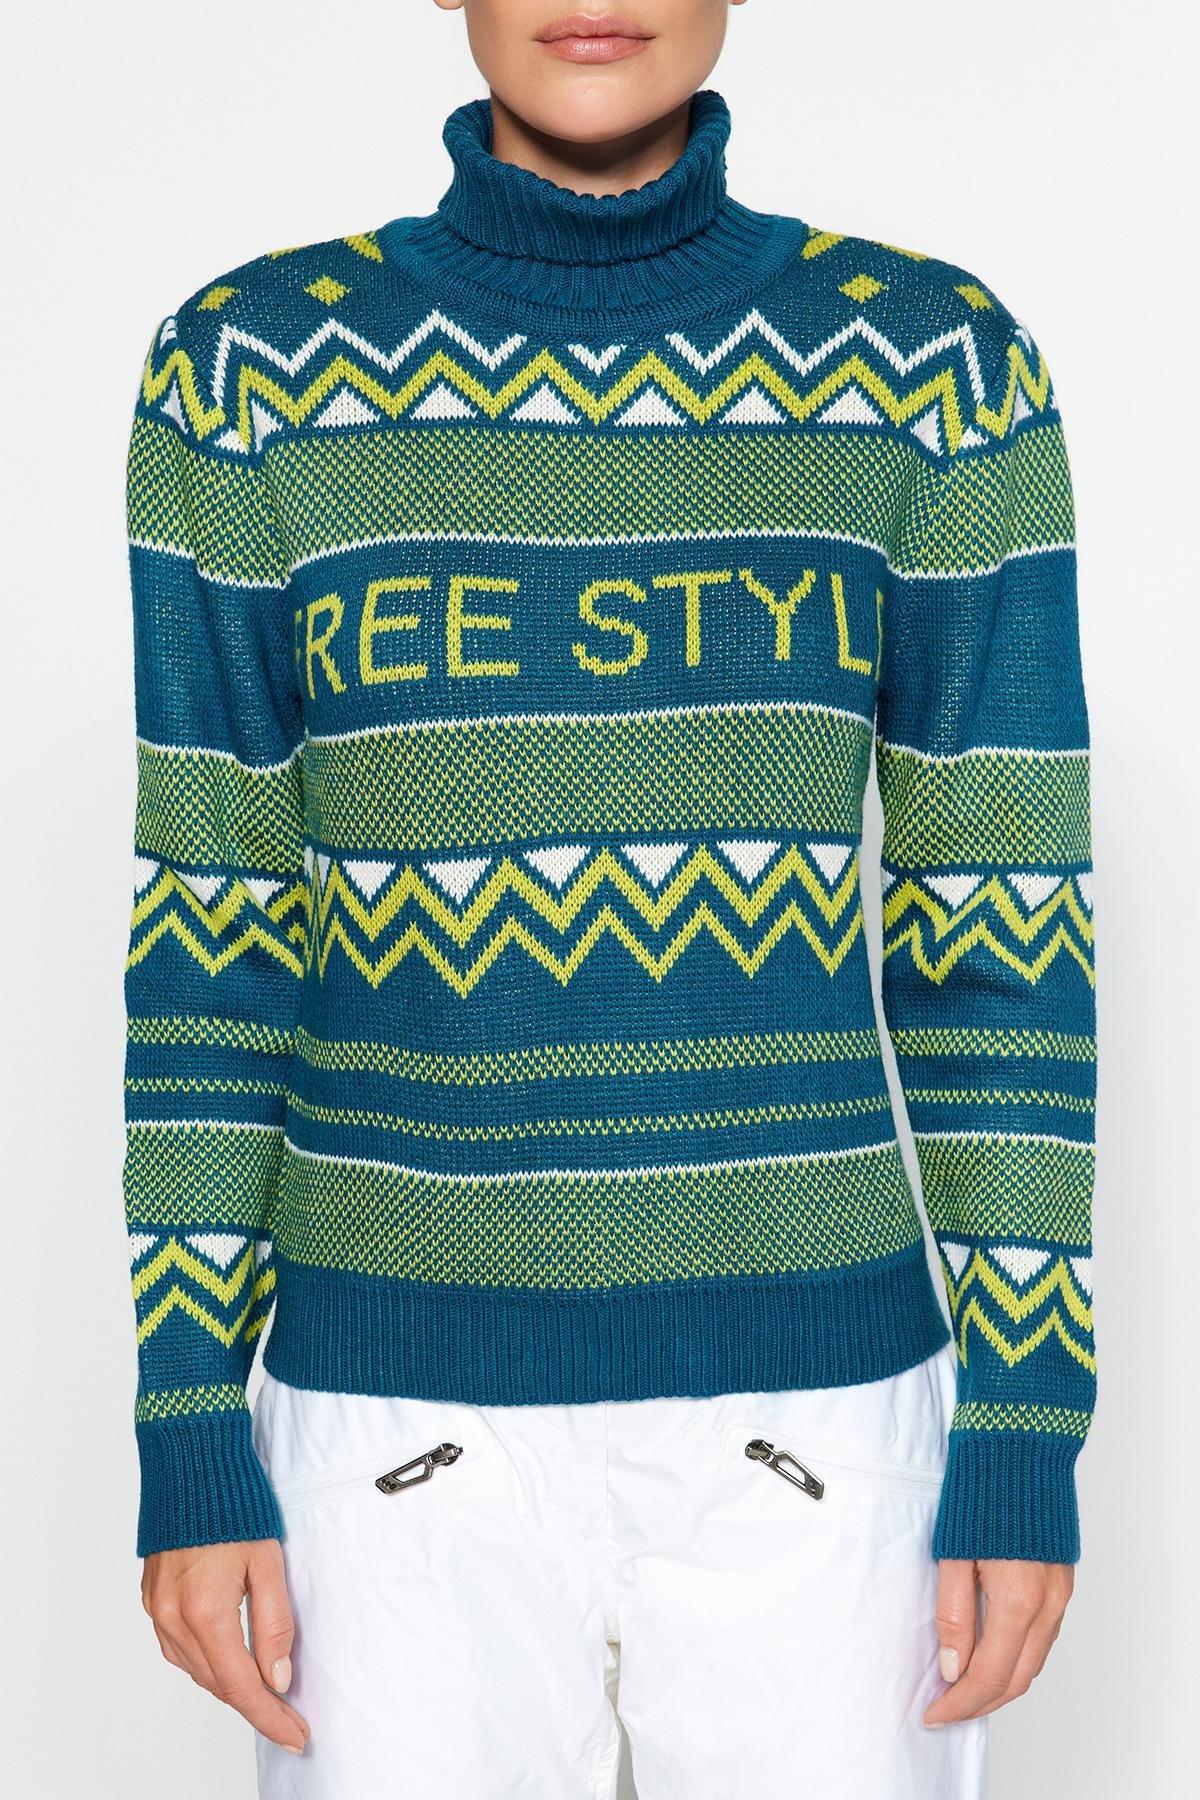 Trendyol - Navy Patterned Knitwear Sweater